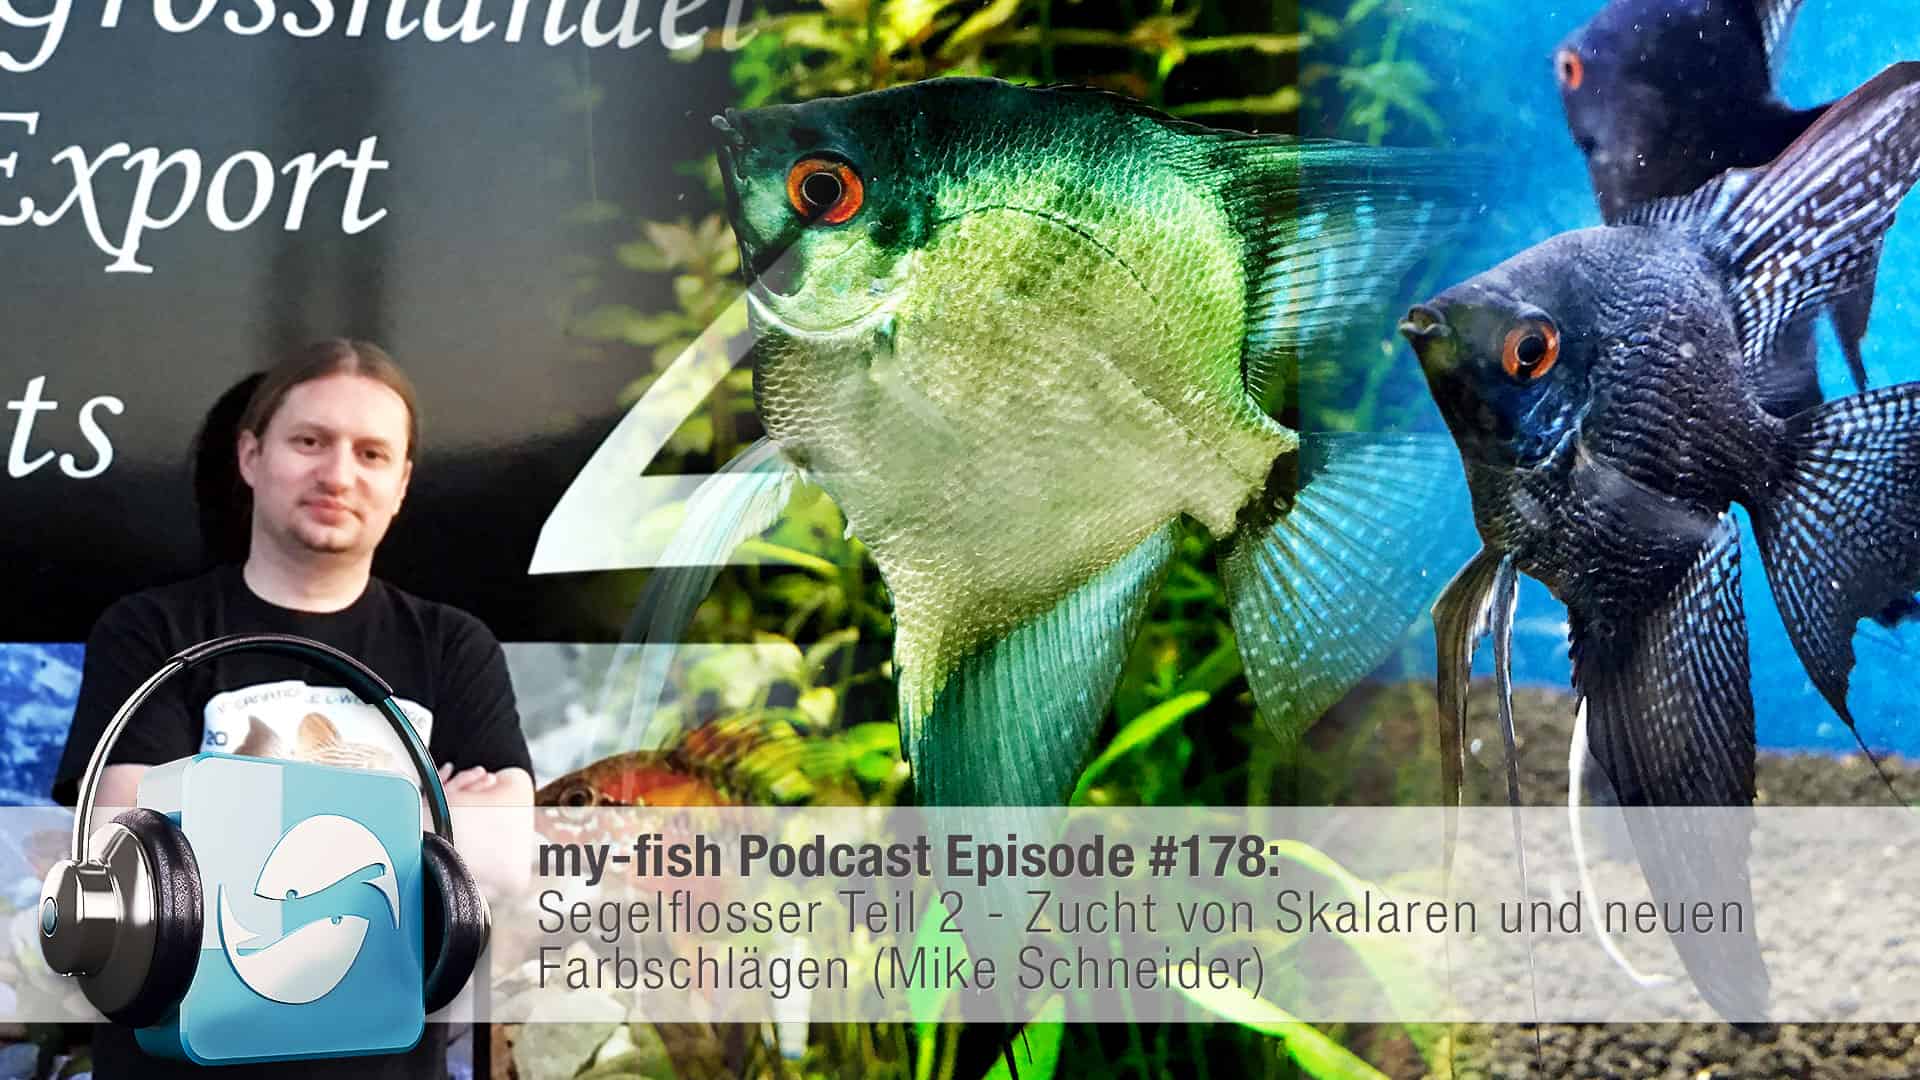 Podcast Episode #178:Segelflosser Teil 2 - Zucht von Skalaren und neuen Farbschlägen (Mike Schneider)